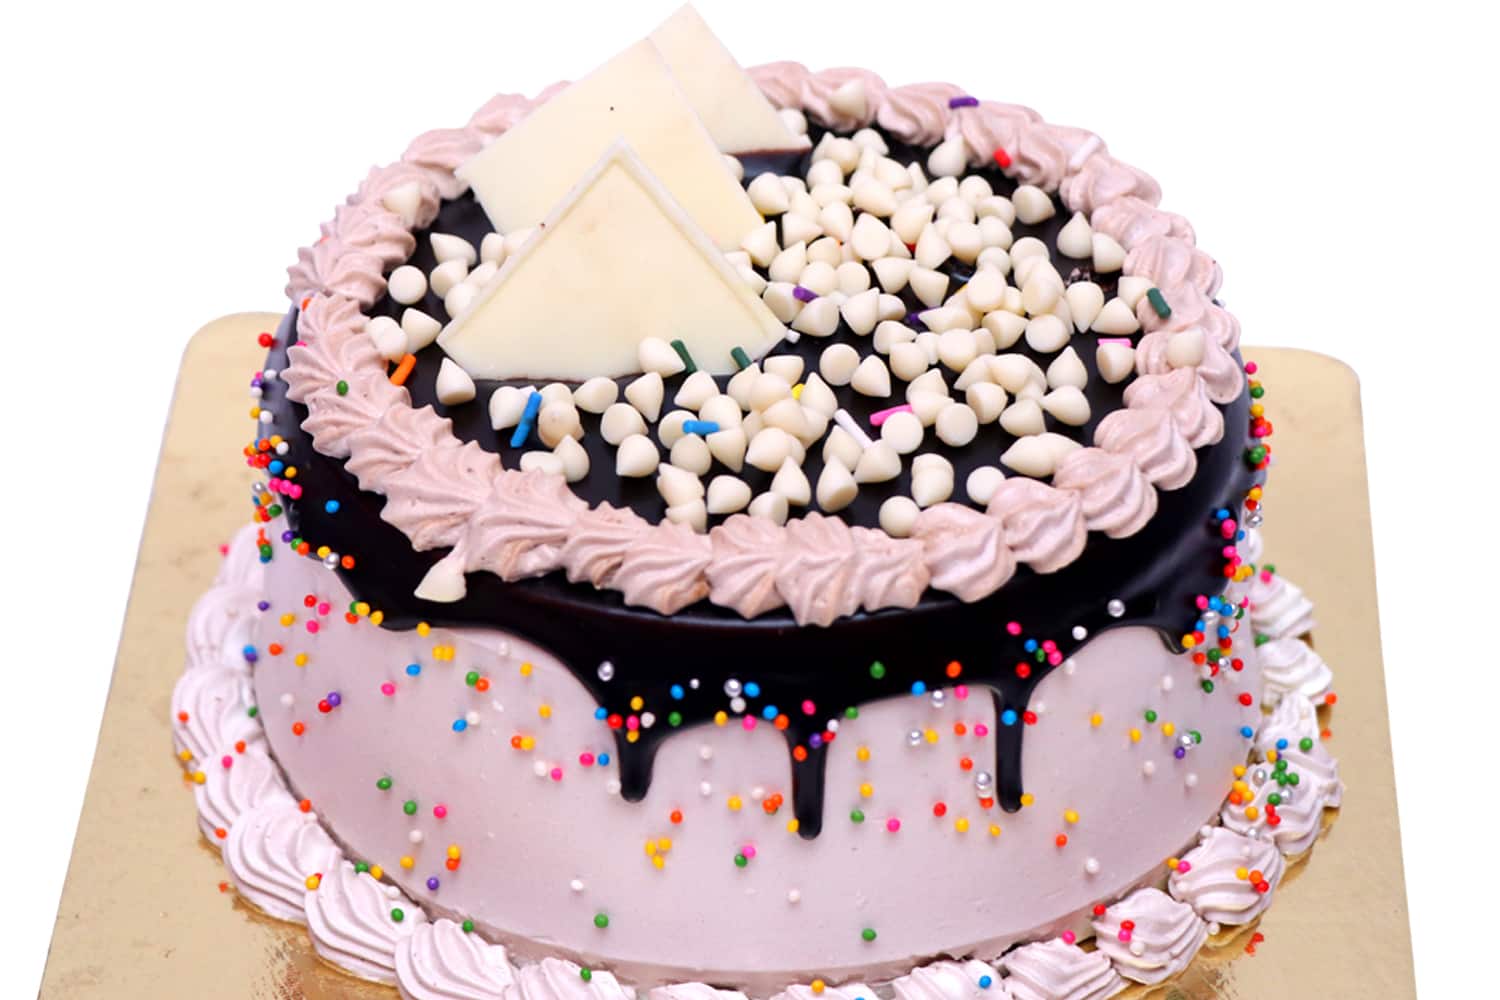 Share 78+ dora cake zomato latest - awesomeenglish.edu.vn